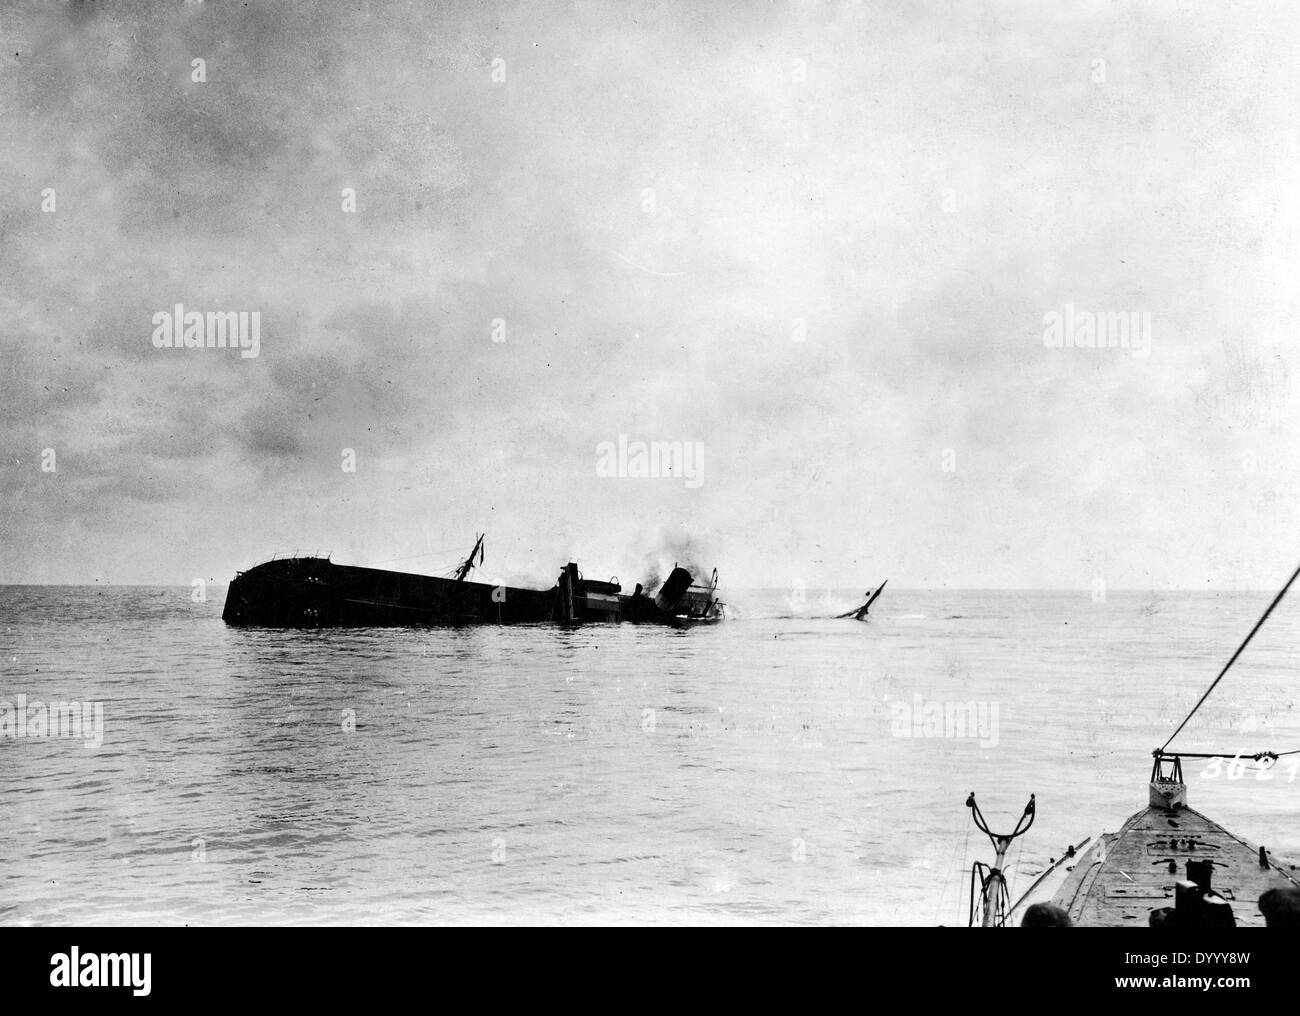 Sinking of an Greek ship in World War I Stock Photo